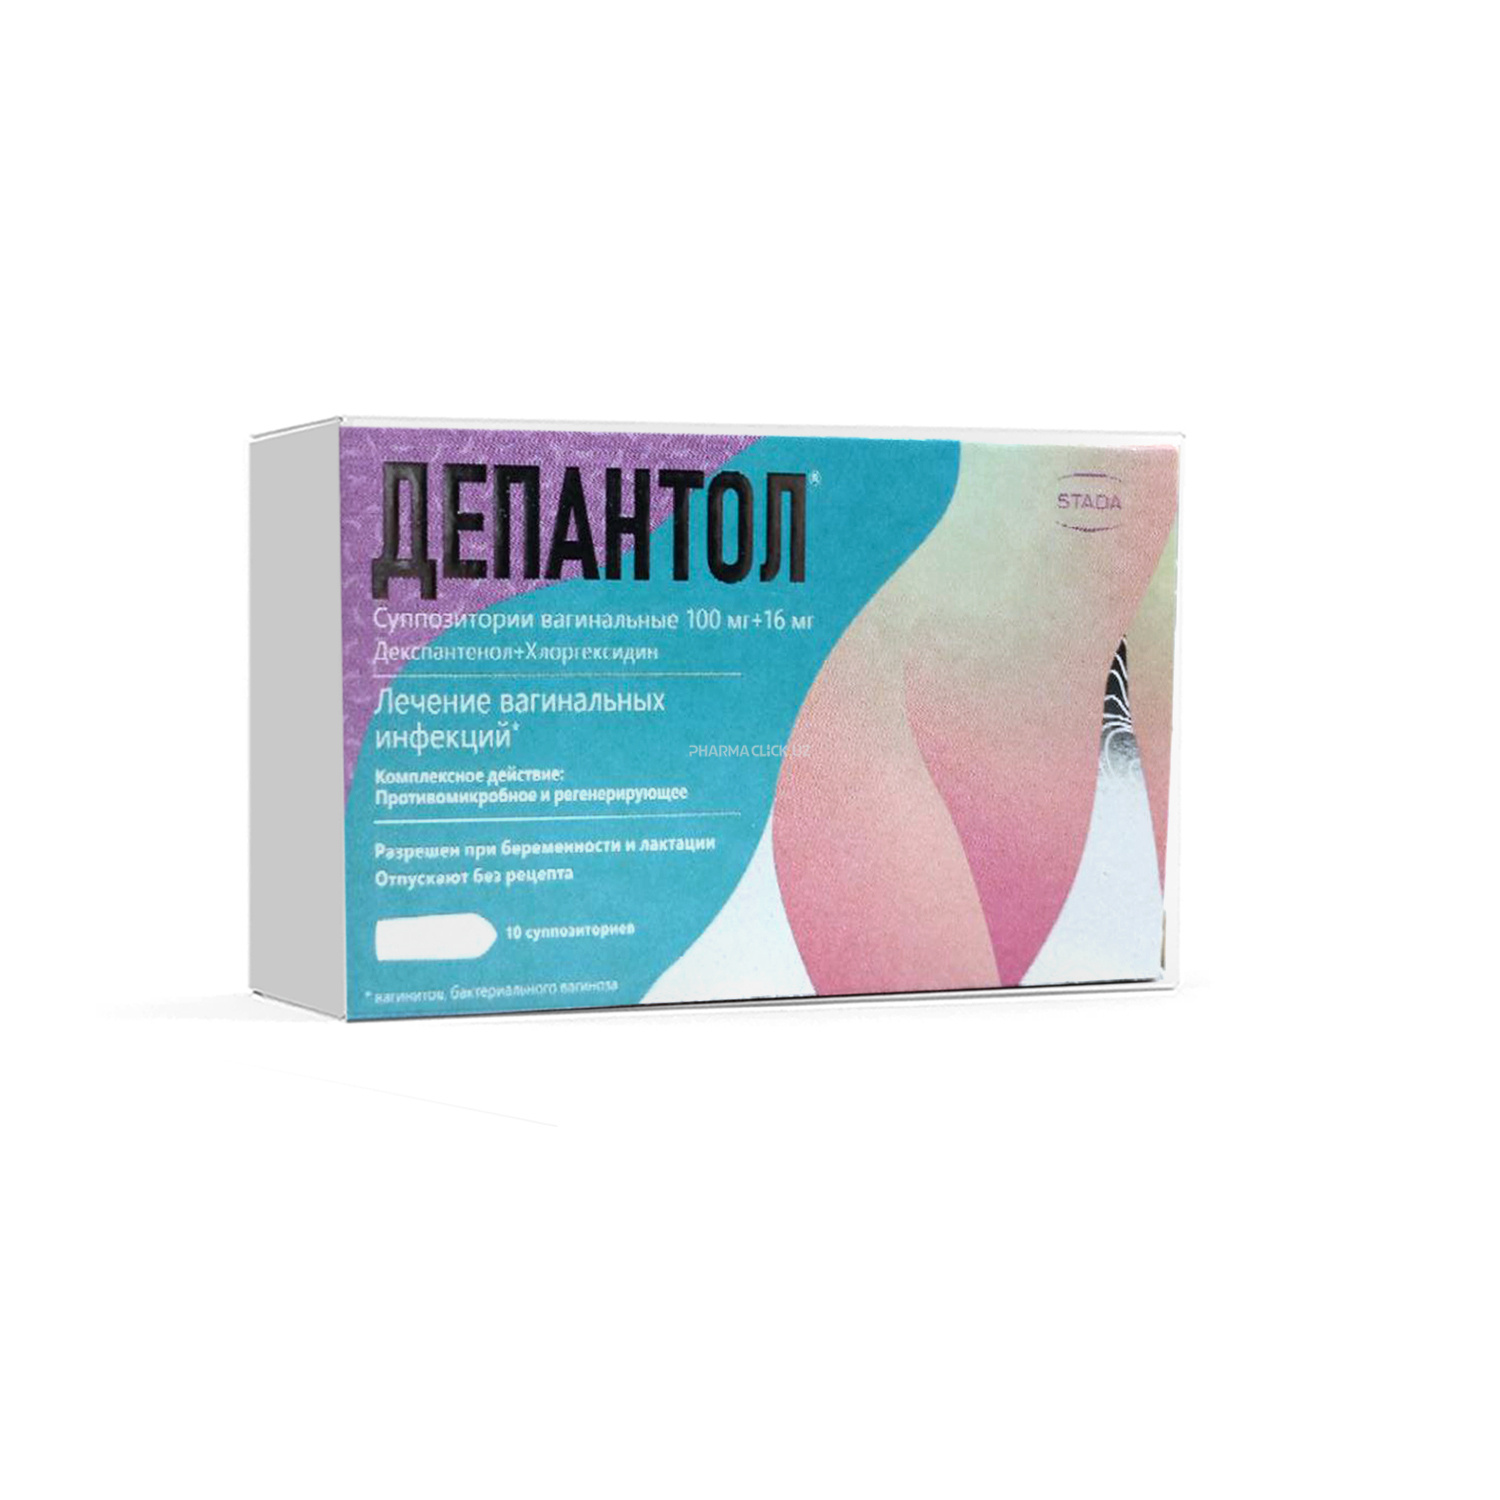 Depantol vaginal suppozitoriylar 100 mg + 16 mg №10 (Nijfarm)